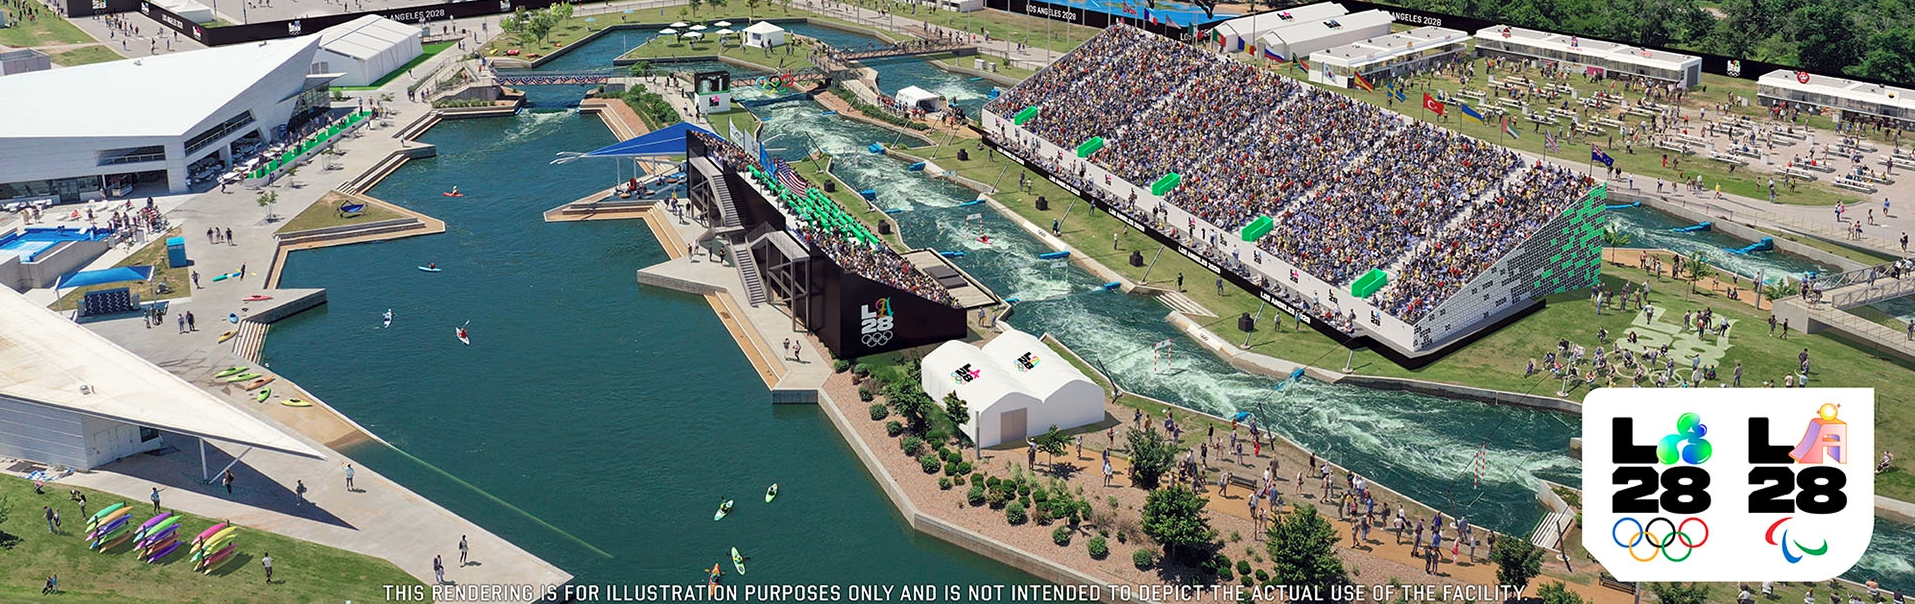 Oklahoma City sa v roku 2028 stane dejiskom olympijských súťaží v kanoistike  na divokej vode